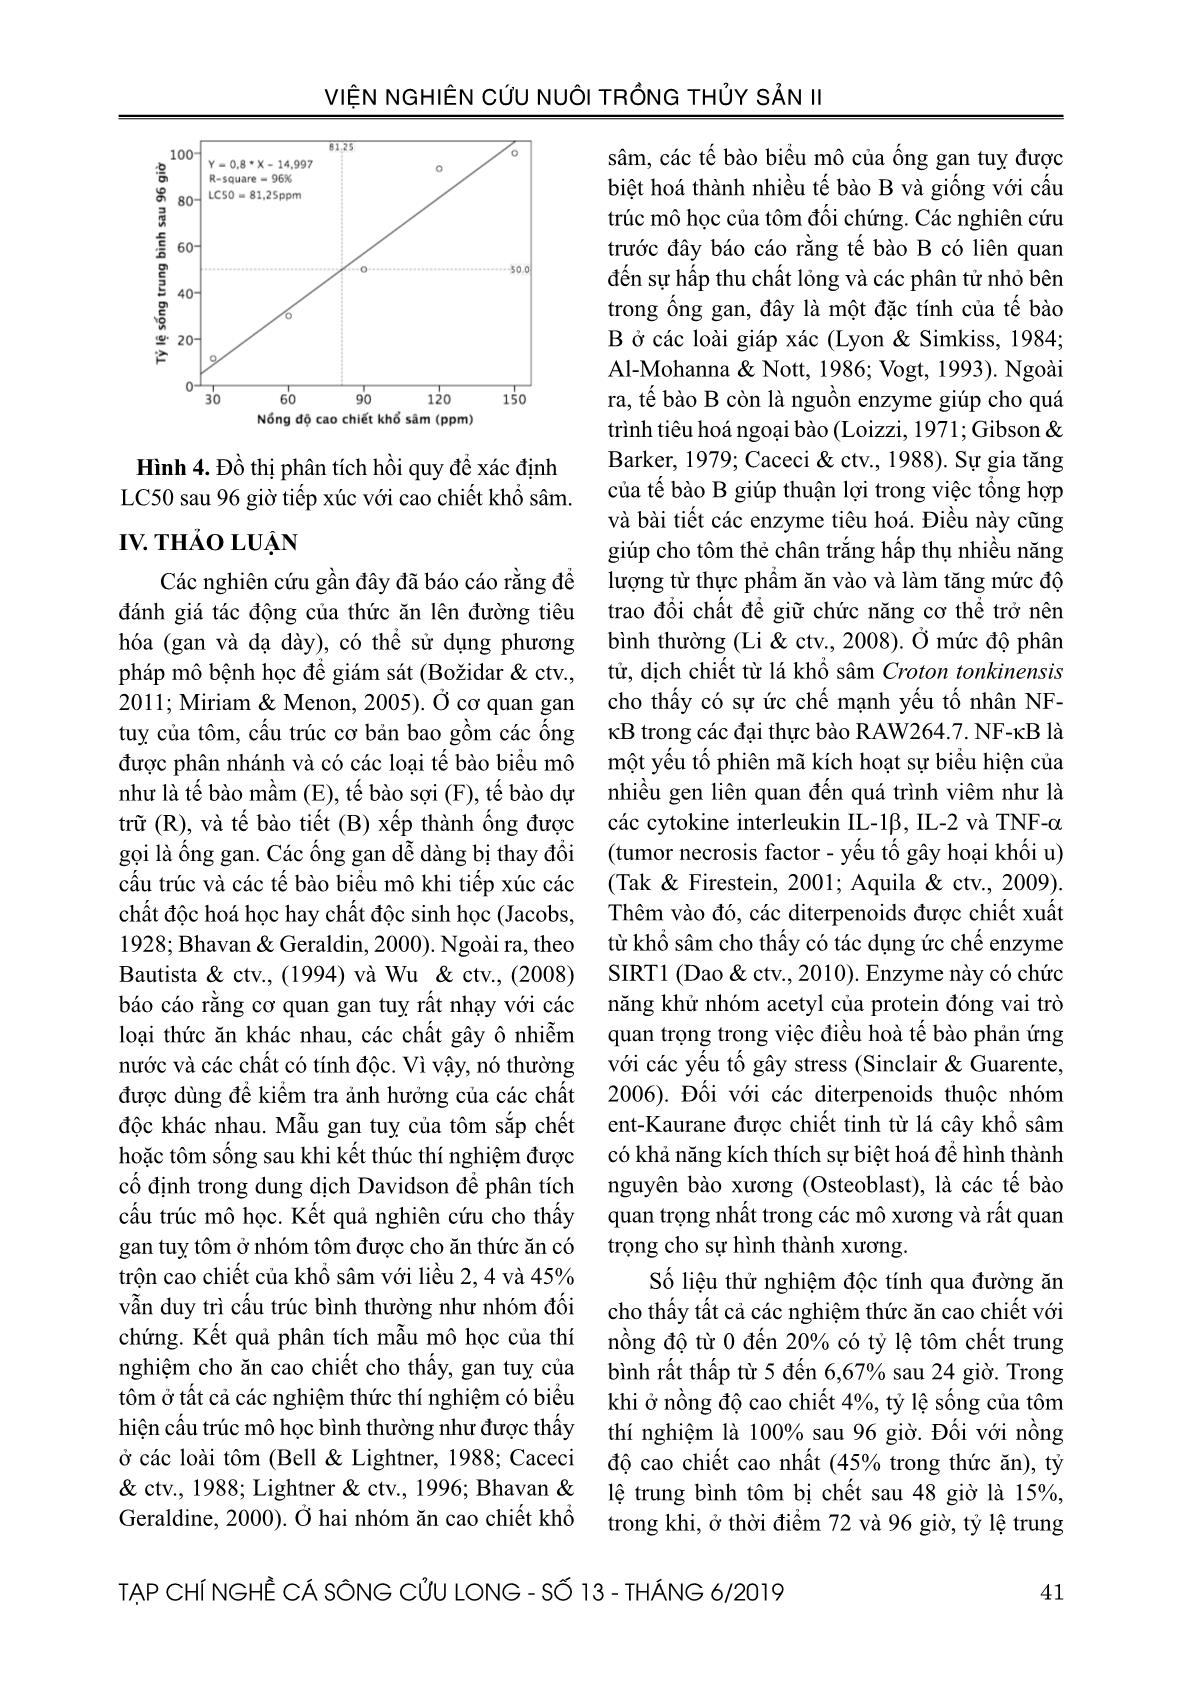 Độ an toàn của cao chiết khổ sâm (Croton tonkinensis) đối với tôm thẻ (Penaeus vannamei) ở điều kiện in vitro trang 7